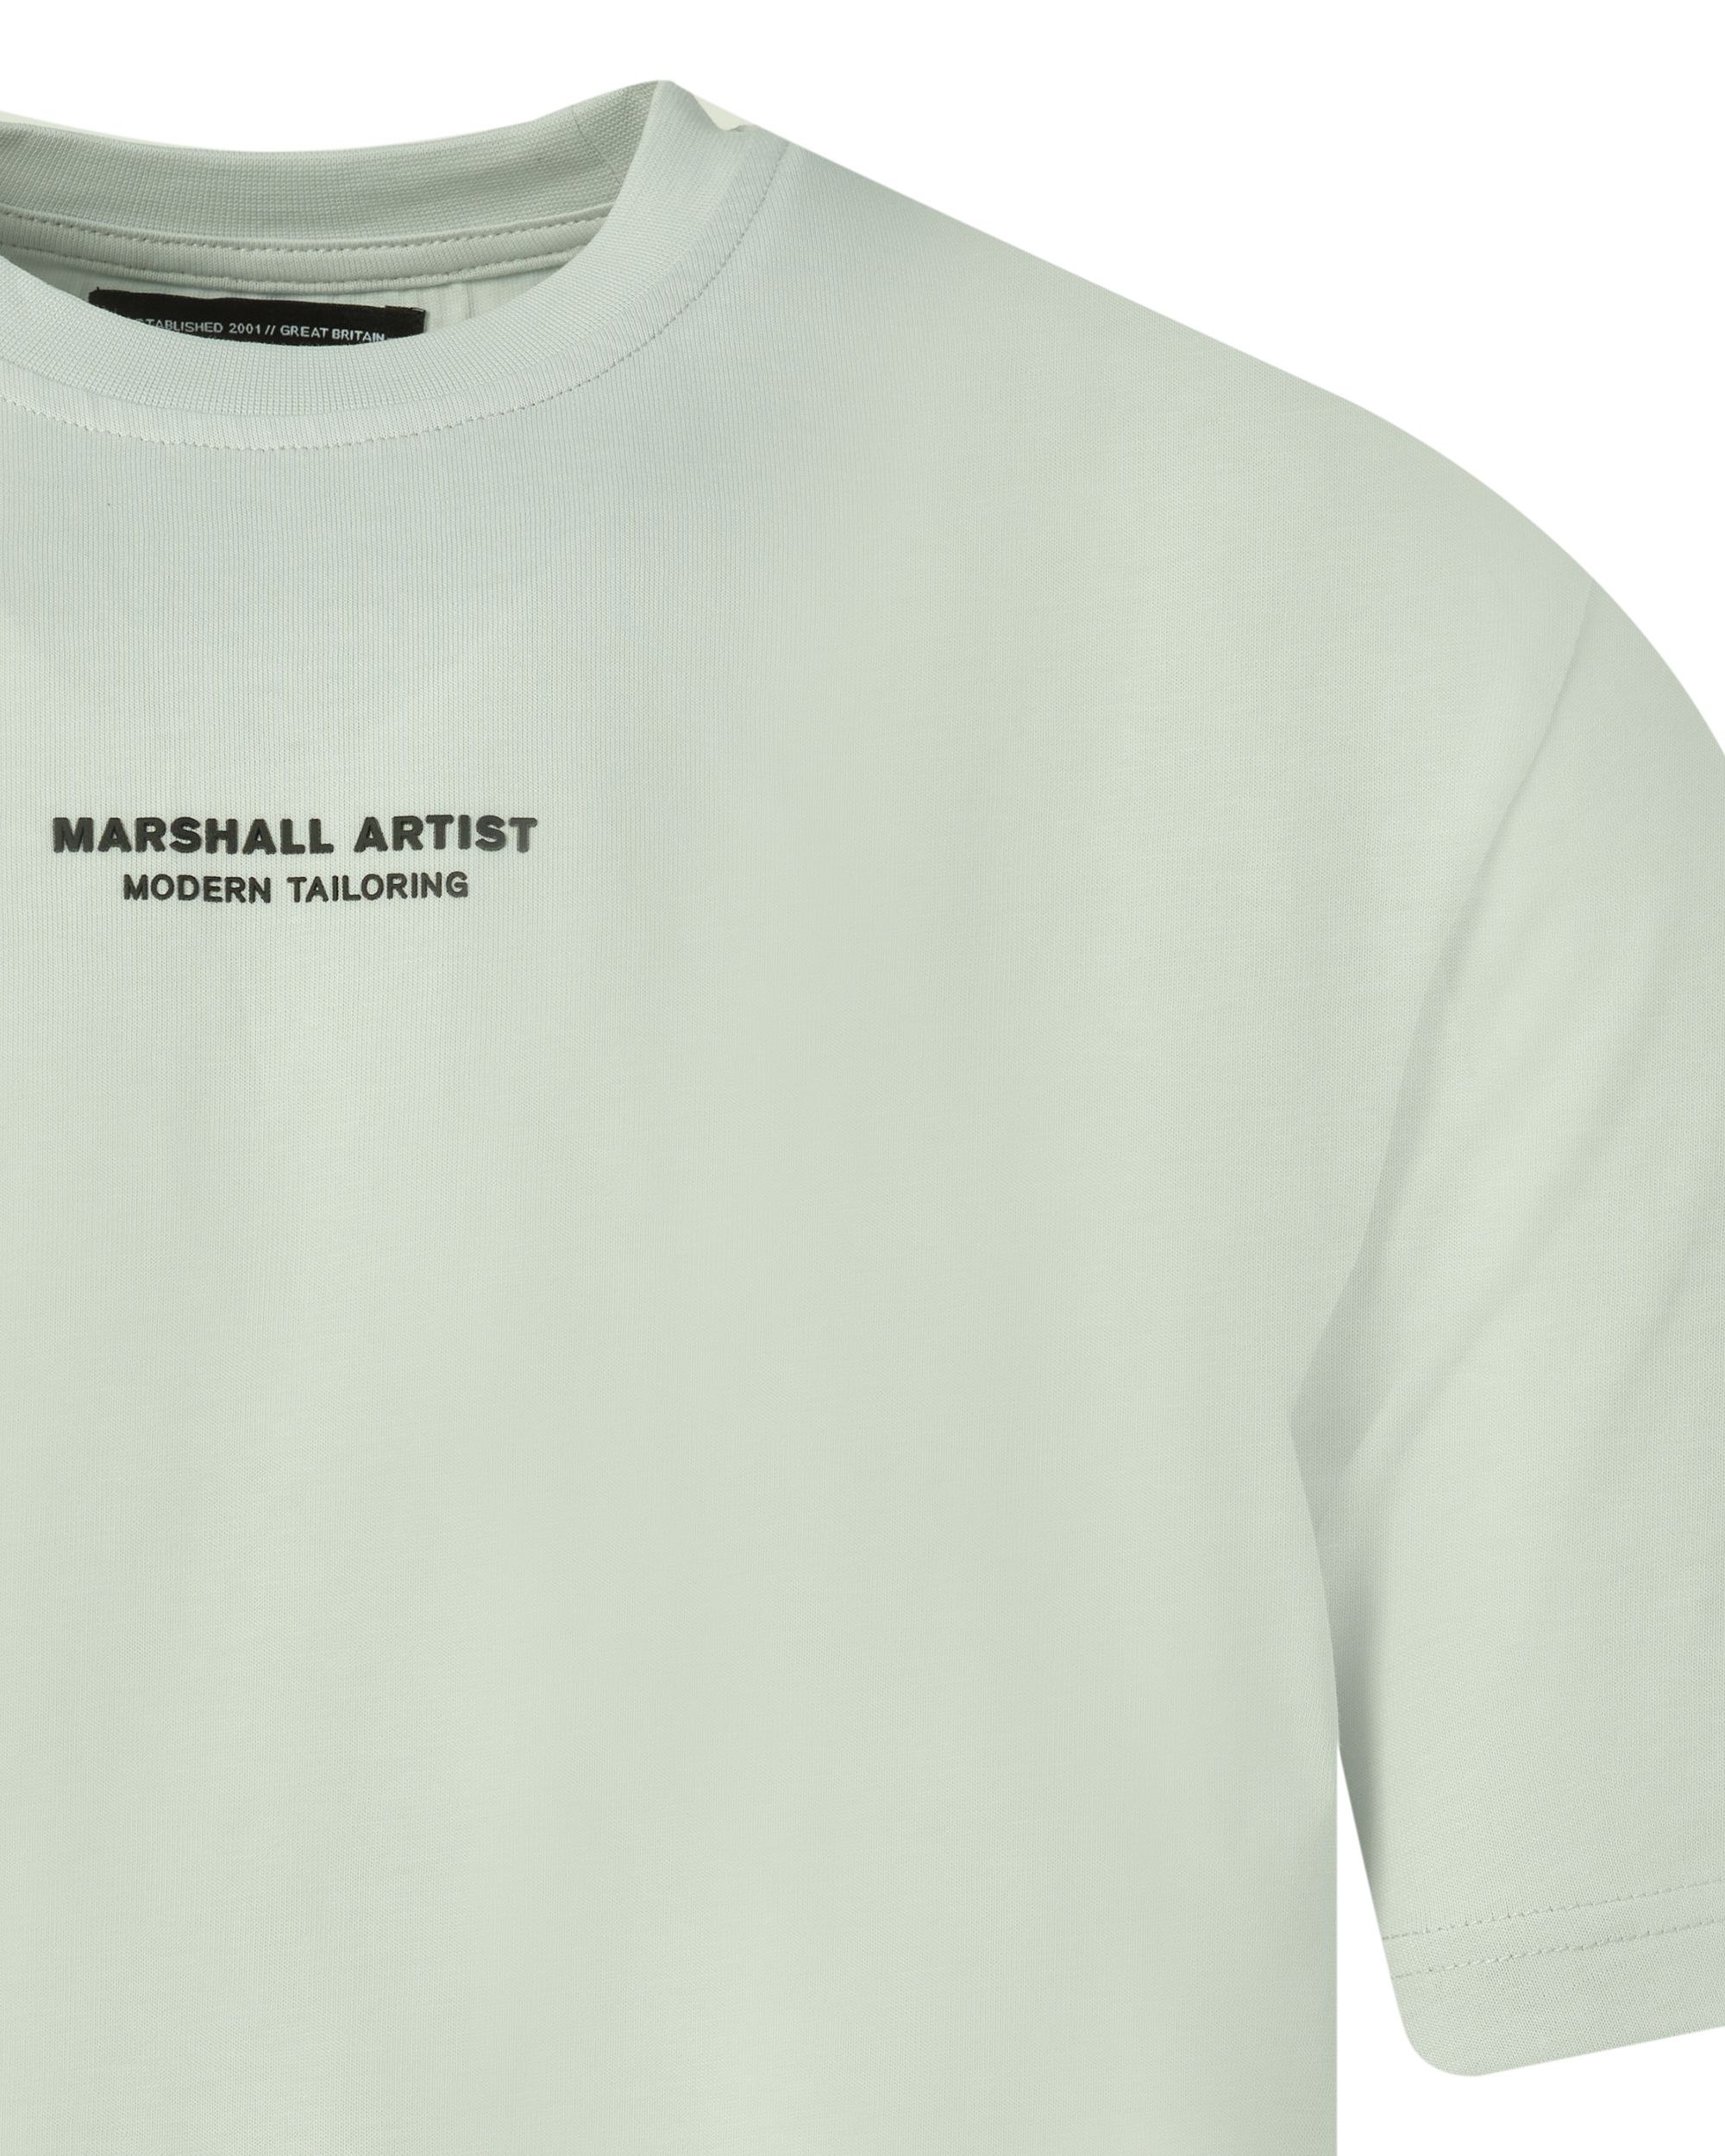 Marshall Artist T-shirt KM Grijs 083620-001-L